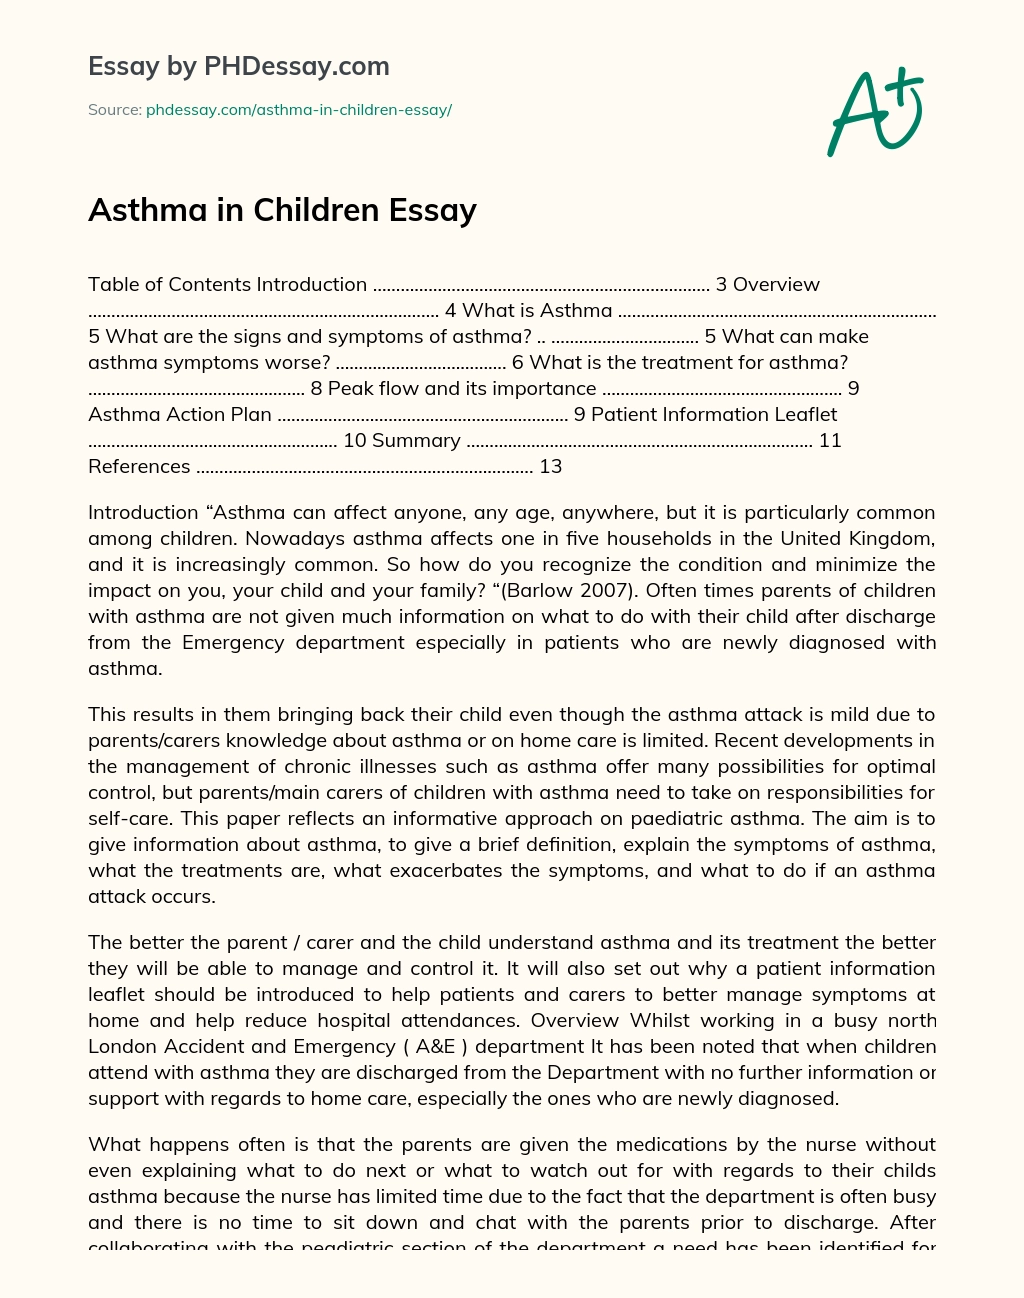 Asthma in Children Essay essay